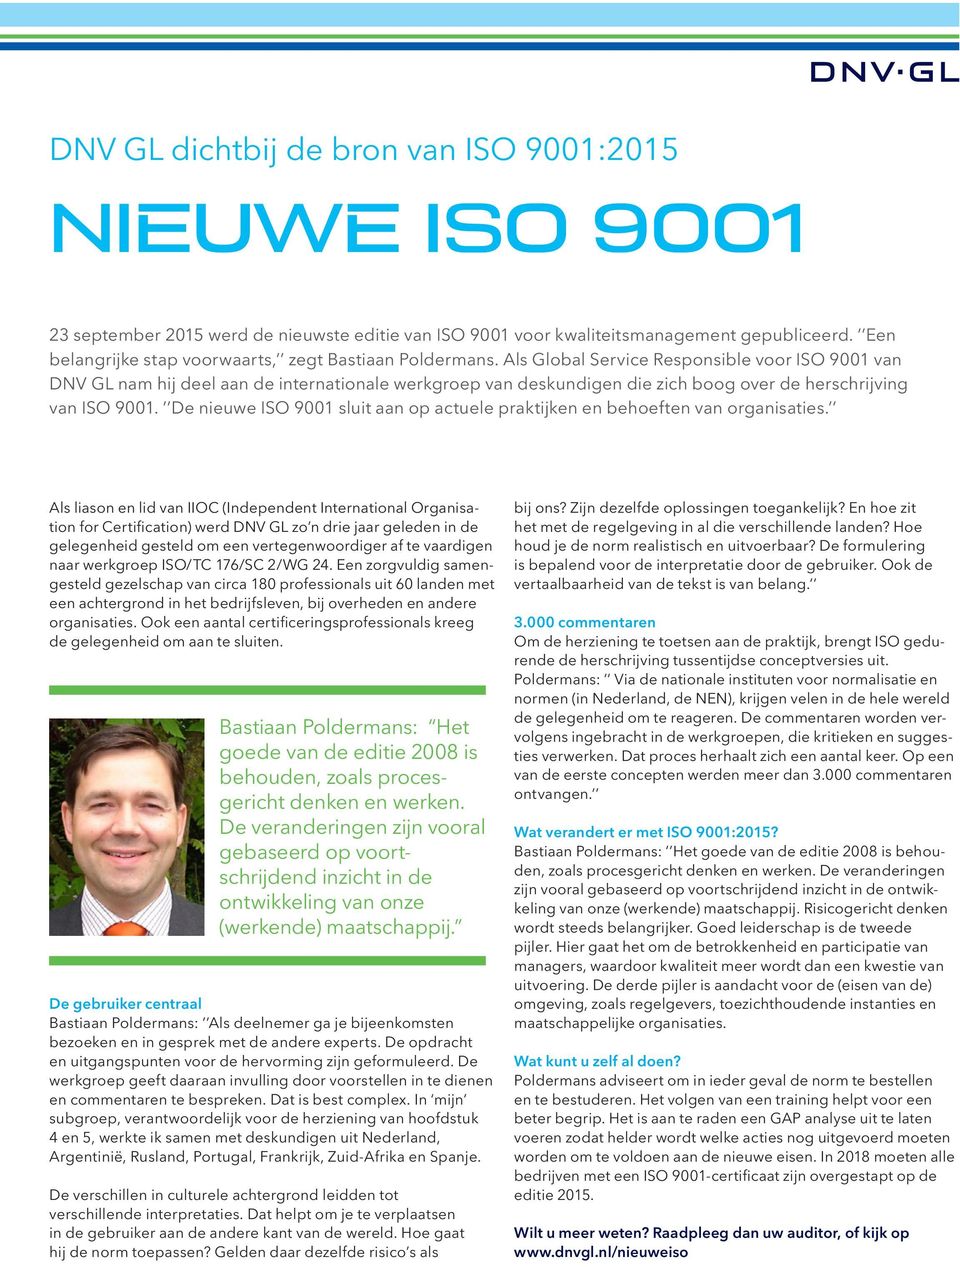 Als Global Service Responsible voor ISO 9001 van DNV GL nam hij deel aan de internationale werkgroep van deskundigen die zich boog over de herschrijving van ISO 9001.